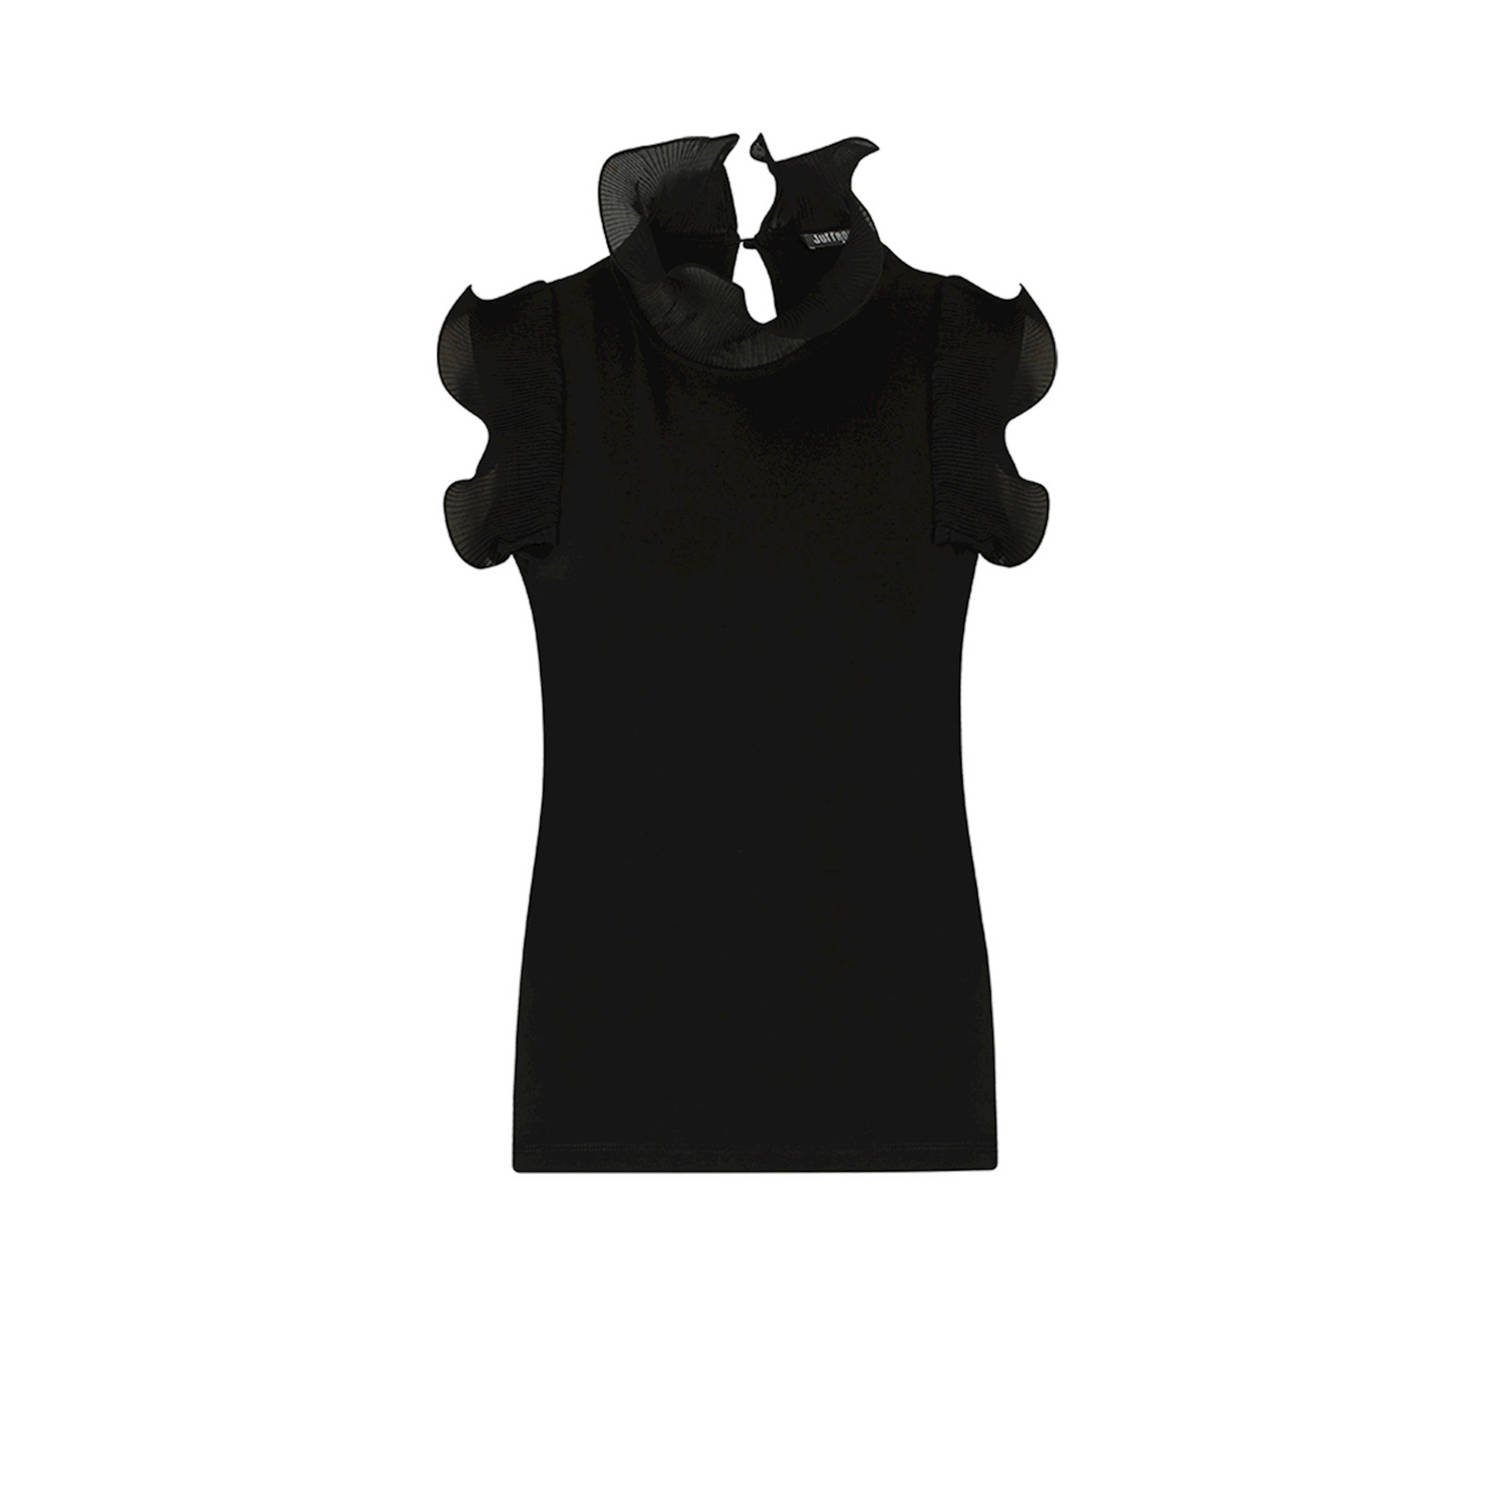 JANSEN AMSTERDAM Dames Tops & T-shirts V309 Top Sleeveless With Ruffle Details Zwart